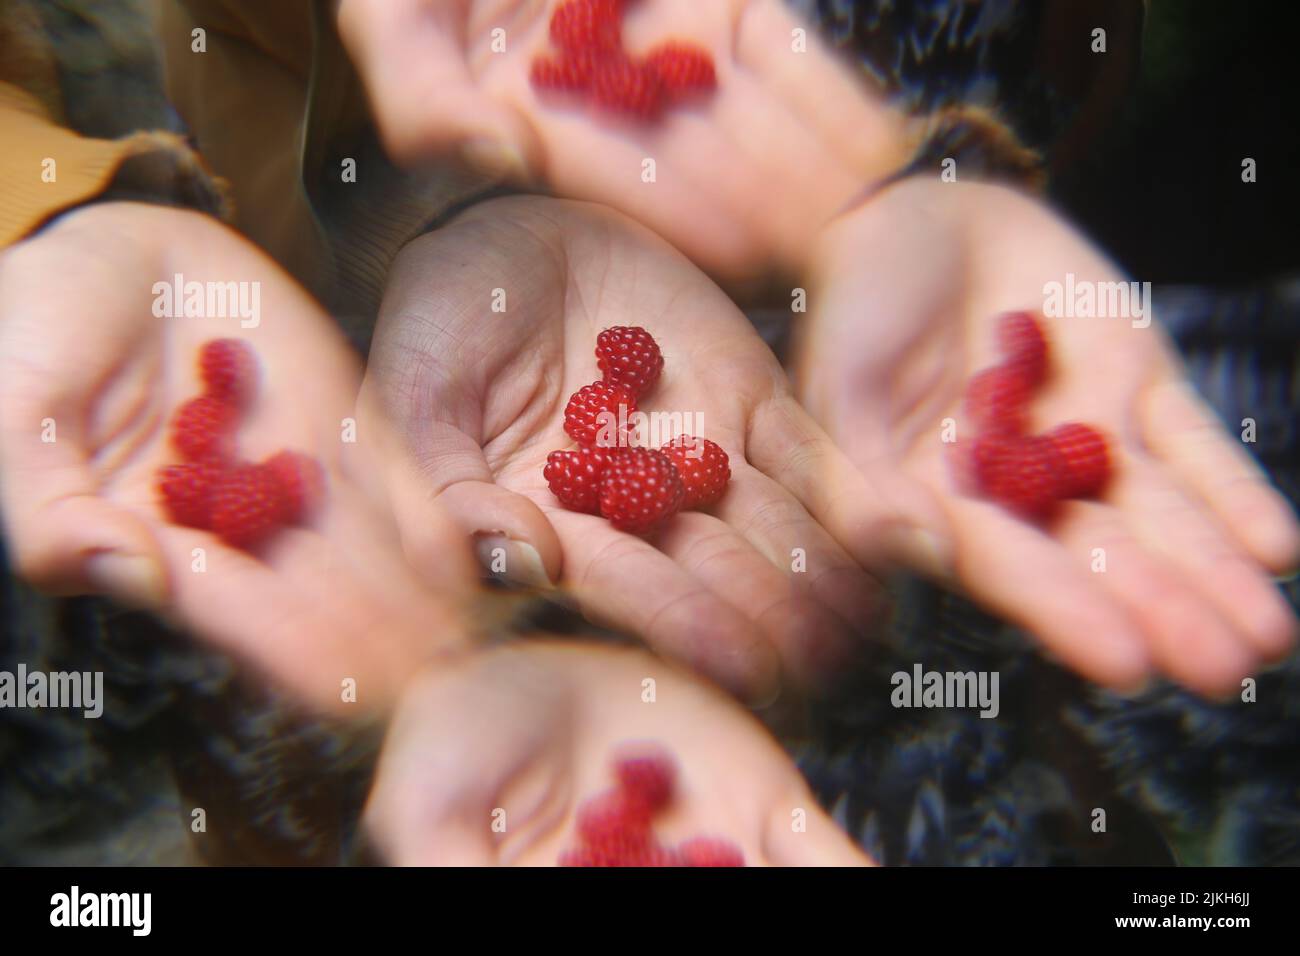 Un primo piano della palma di una persona che tiene lamponi rossi maturi. L'immagine include l'effetto filtro foto Foto Stock